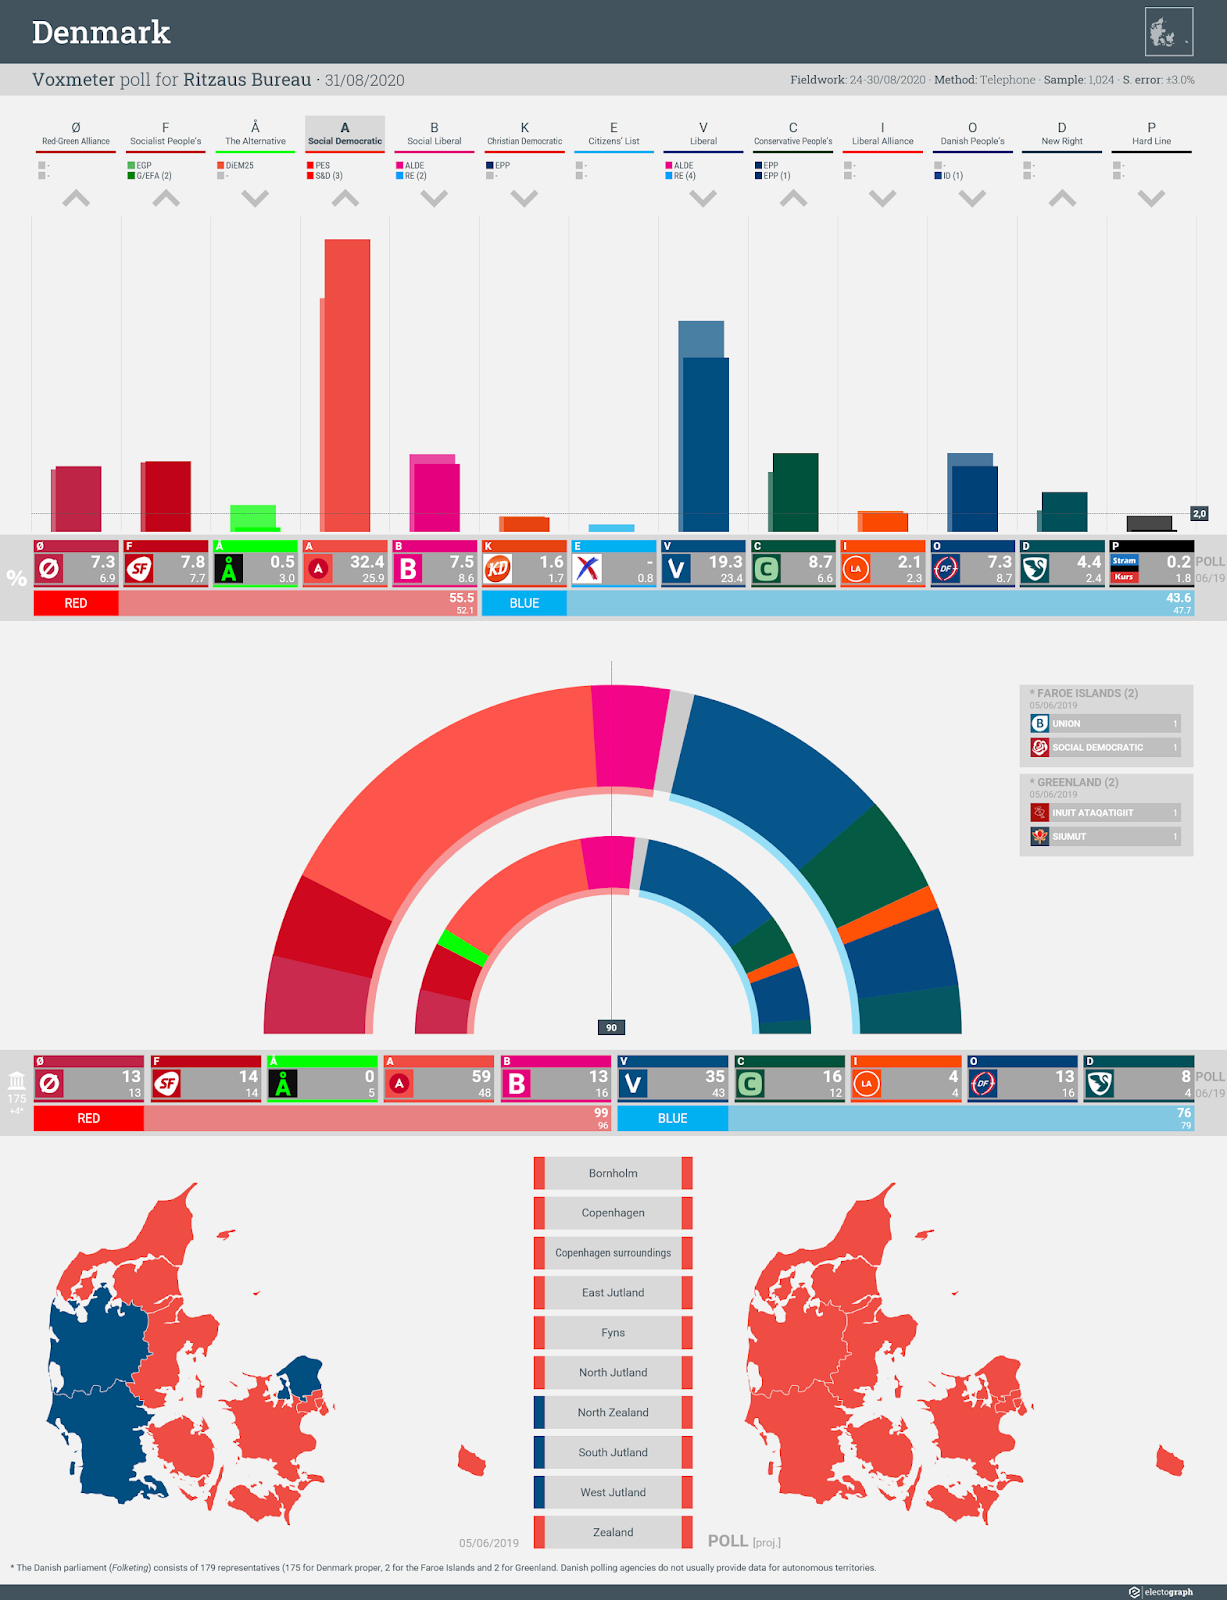 DENMARK: Voxmeter poll chart for Ritzaus Bureau, 31 August 2020